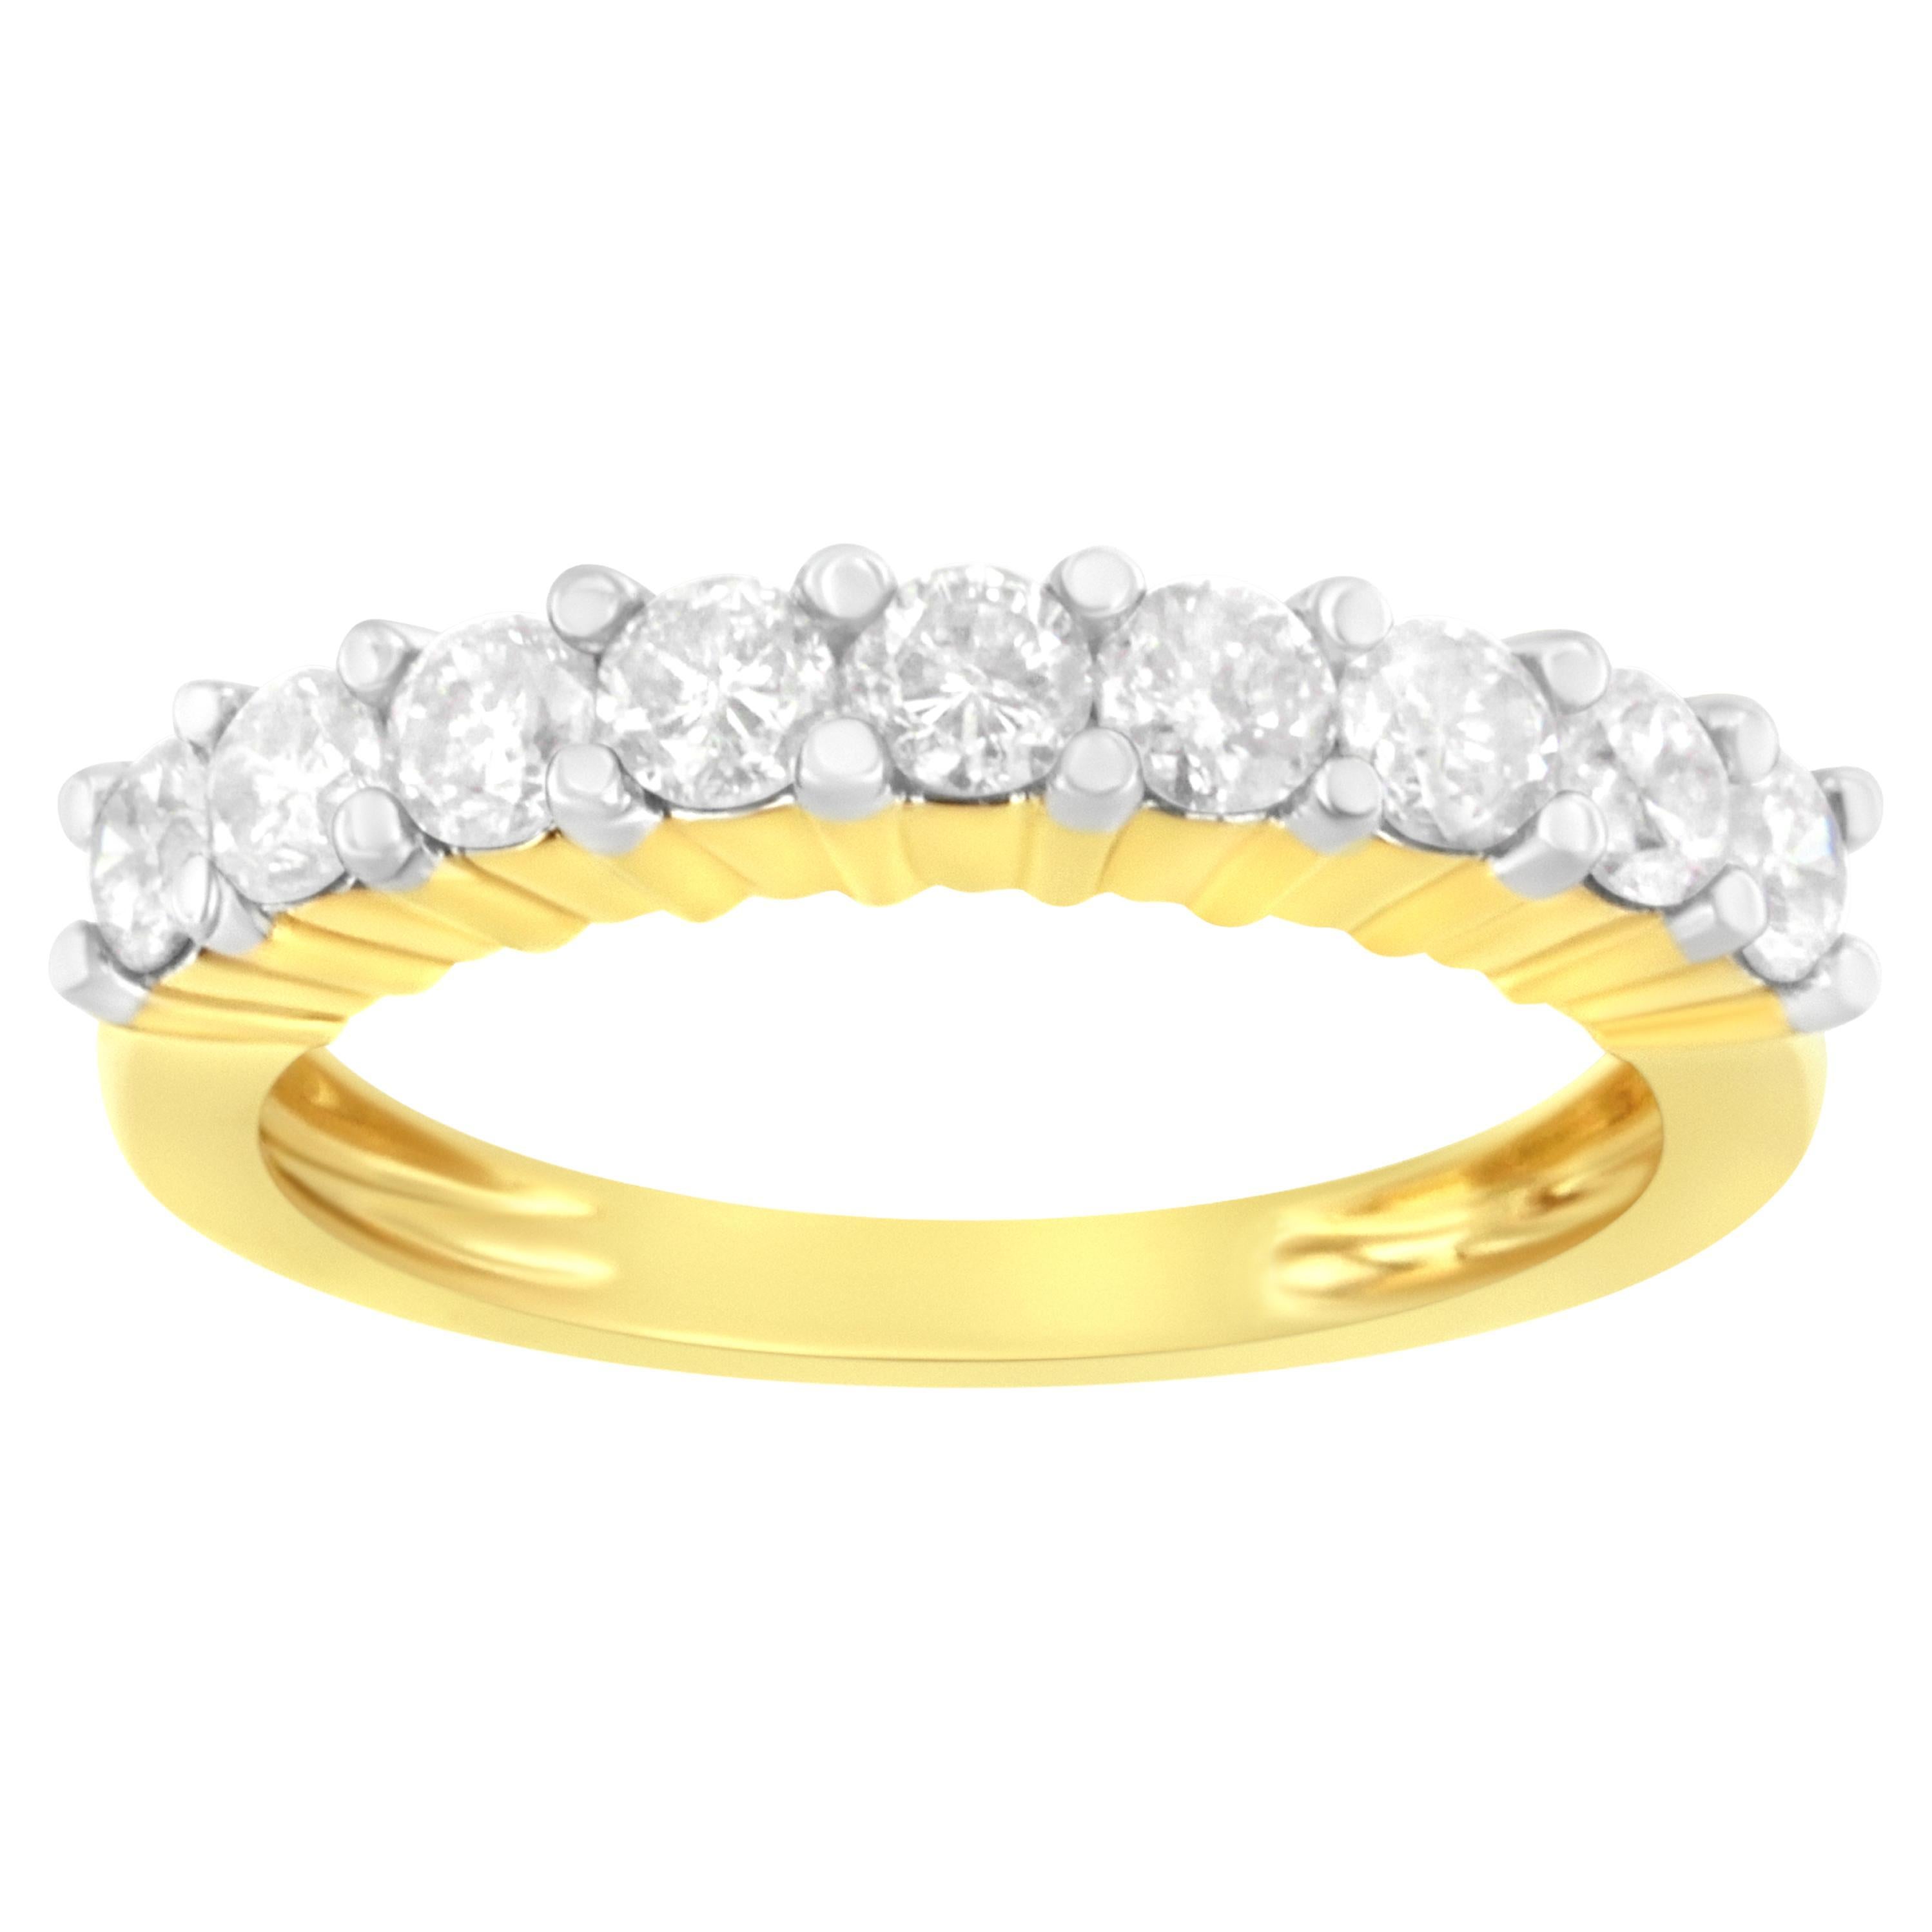 IGI Certified 10K Yellow Gold 1.0 Carat Diamond Band Ring